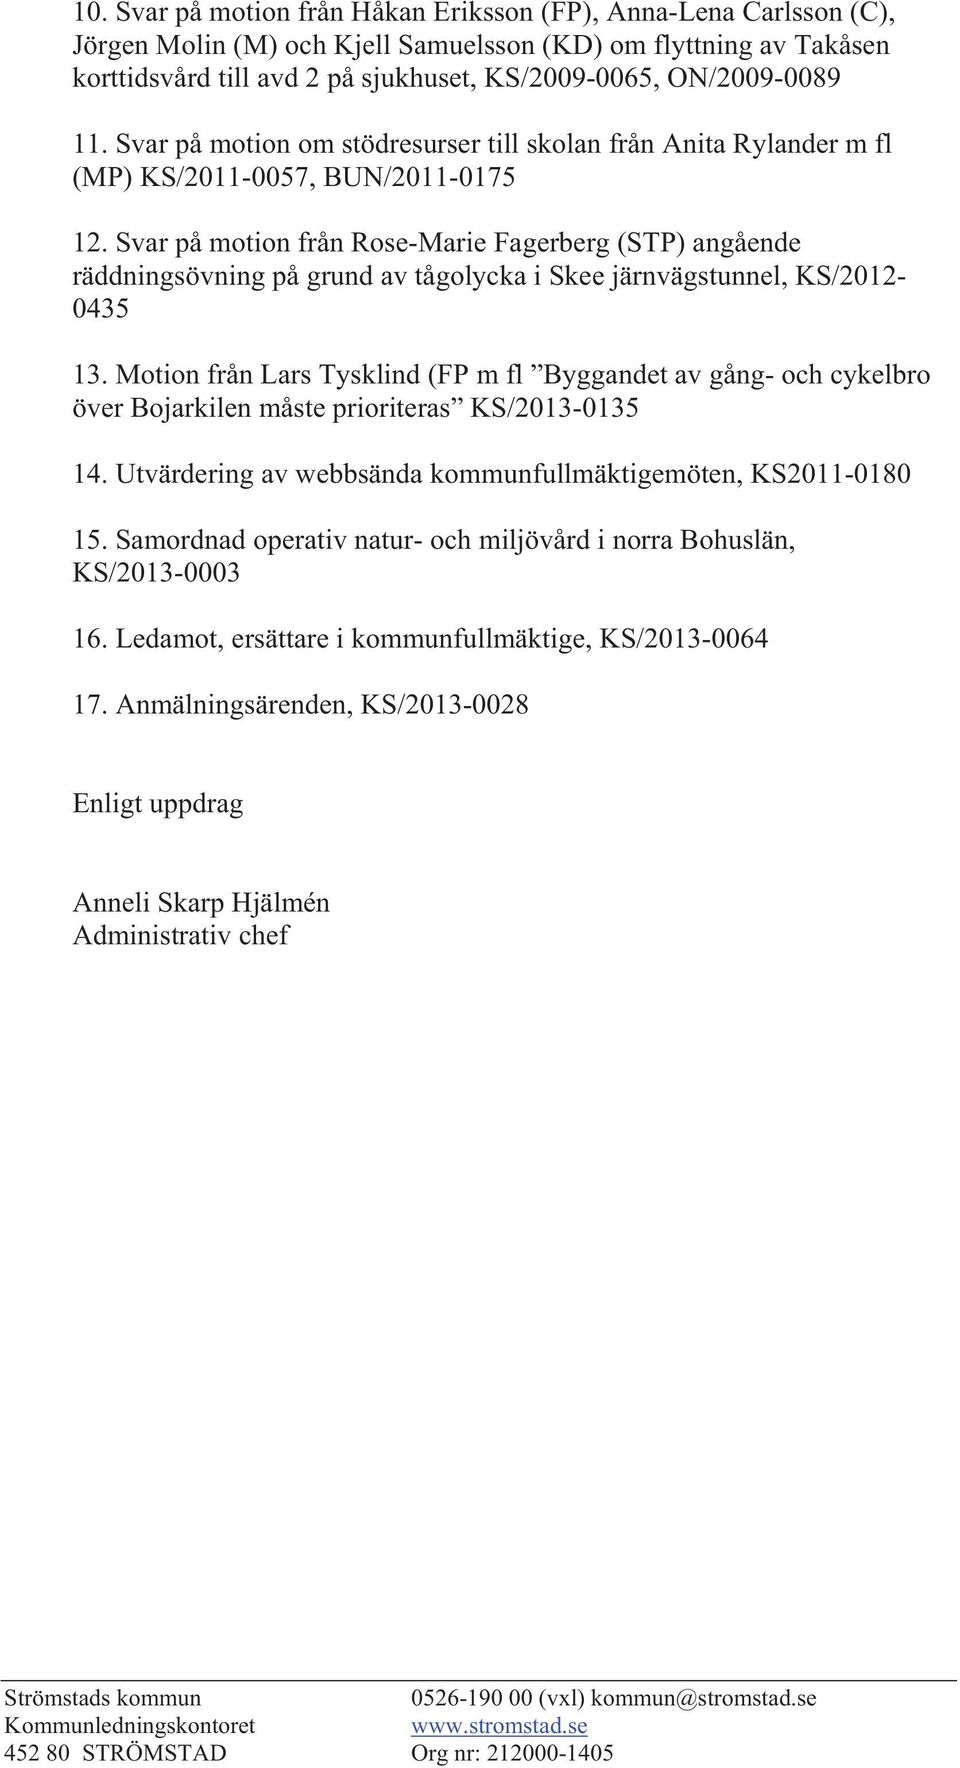 Svar på motion från Rose-Marie Fagerberg (STP) angående räddningsövning på grund av tågolycka i Skee järnvägstunnel, KS/2012-0435 13.